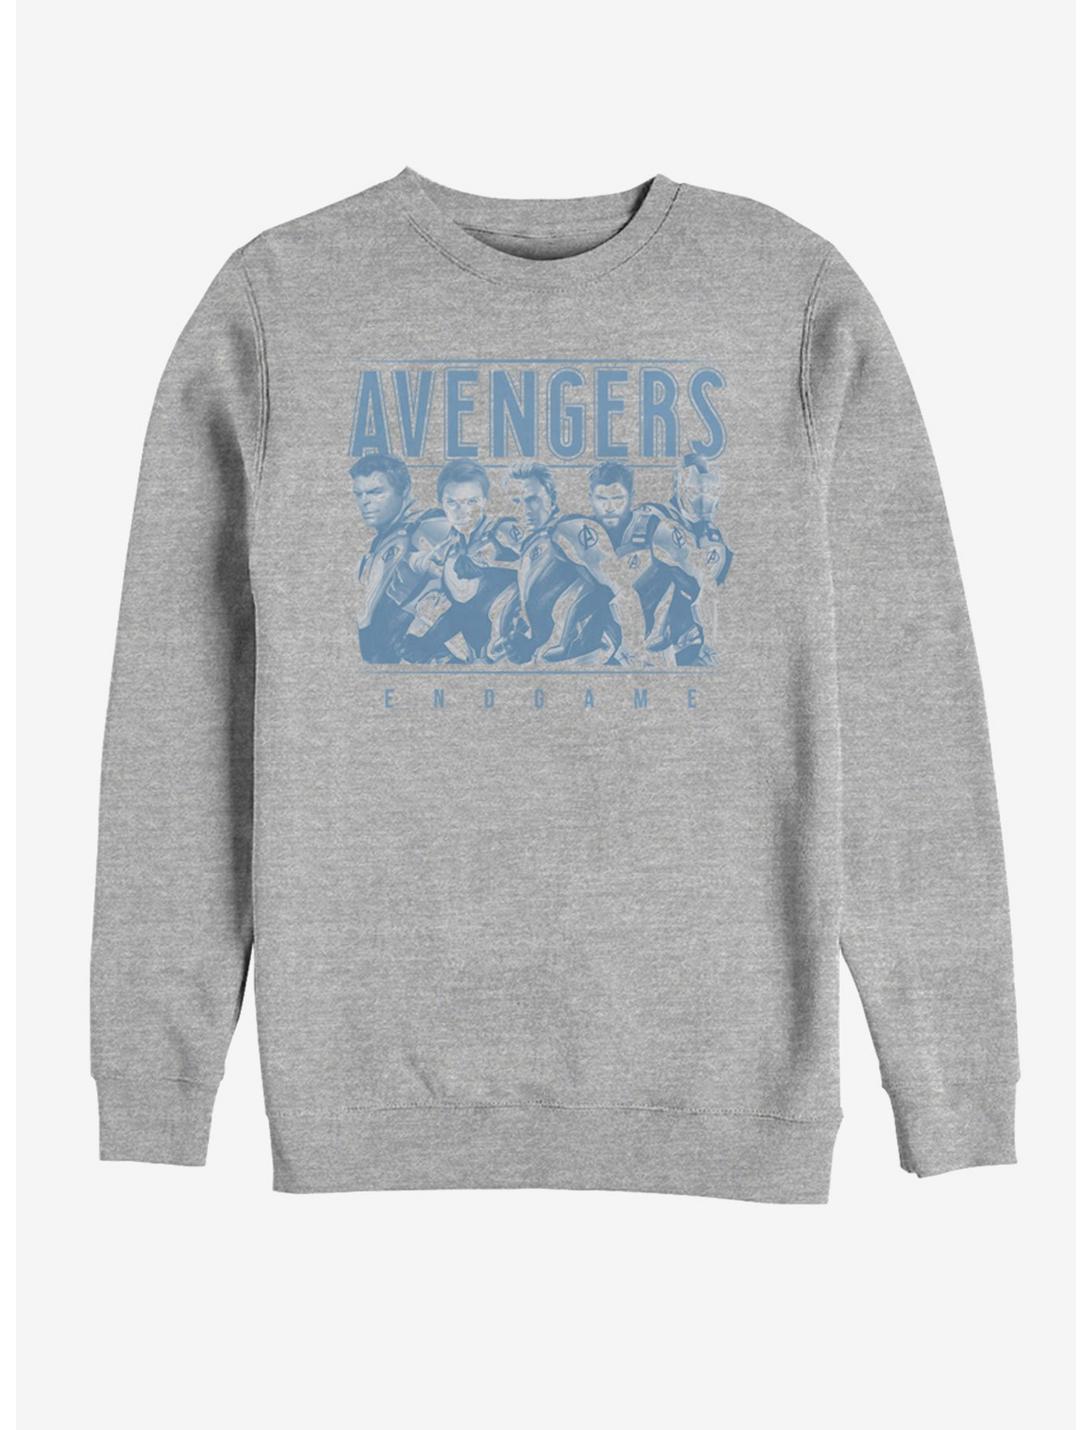 Marvel Avengers: Endgame Avenger Endgame Group Sweatshirt, ATH HTR, hi-res